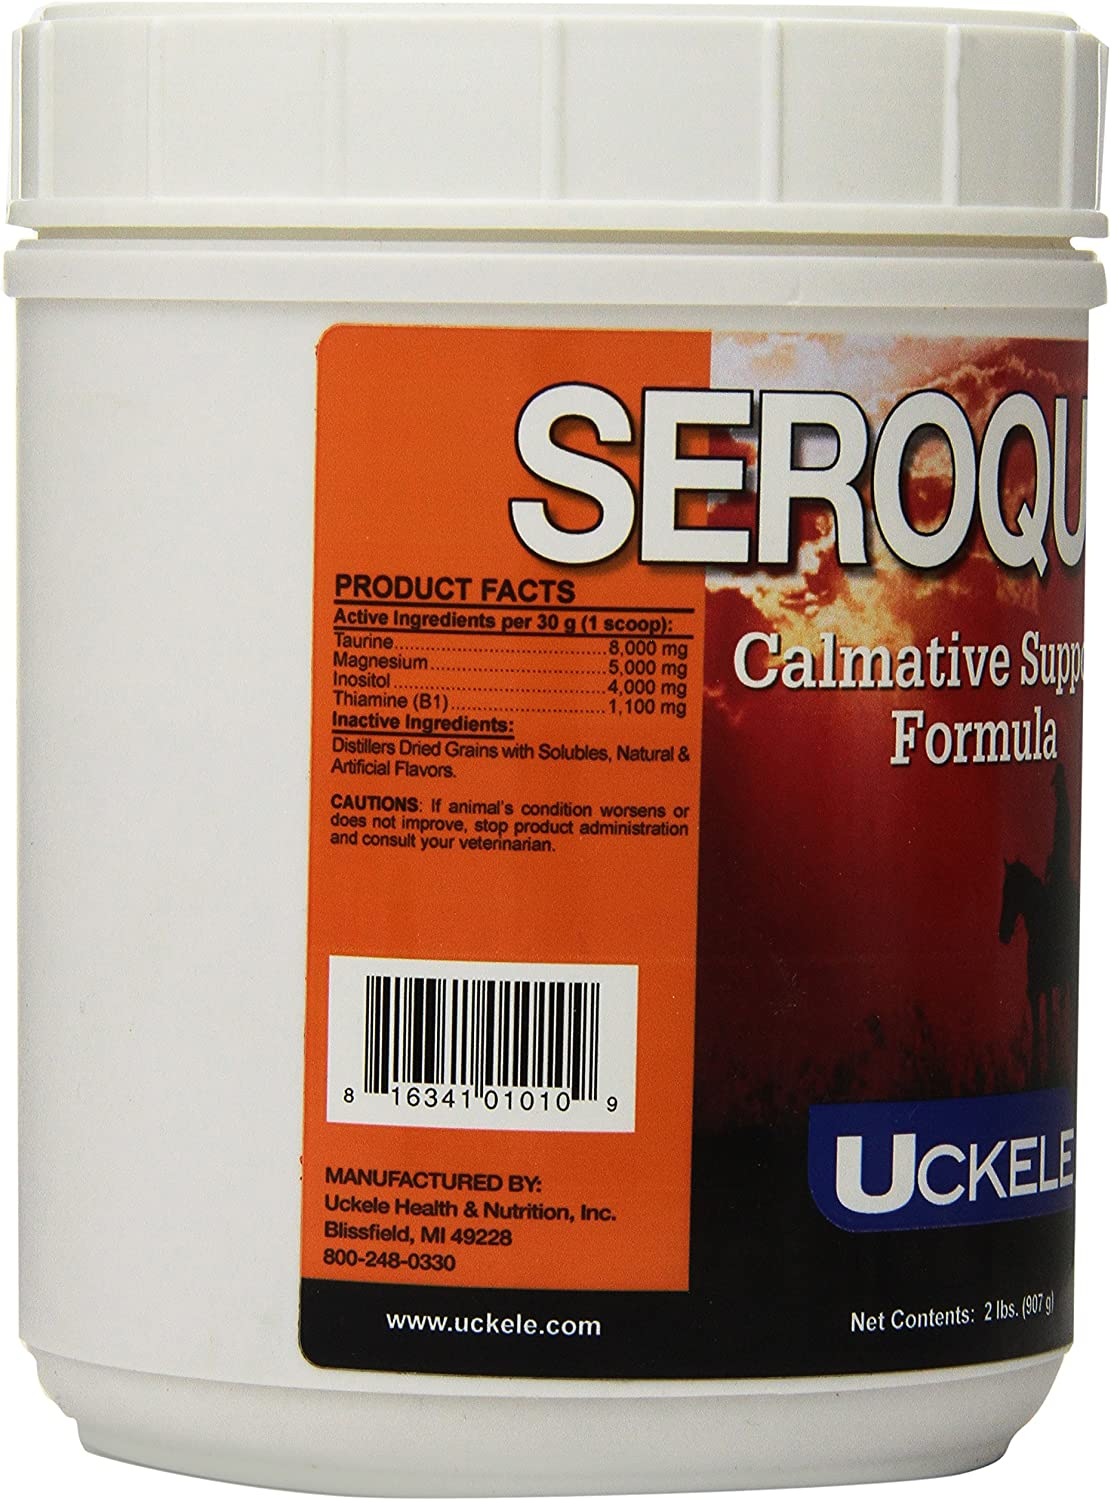 Seroquine Horse Supplement, 2-Pound